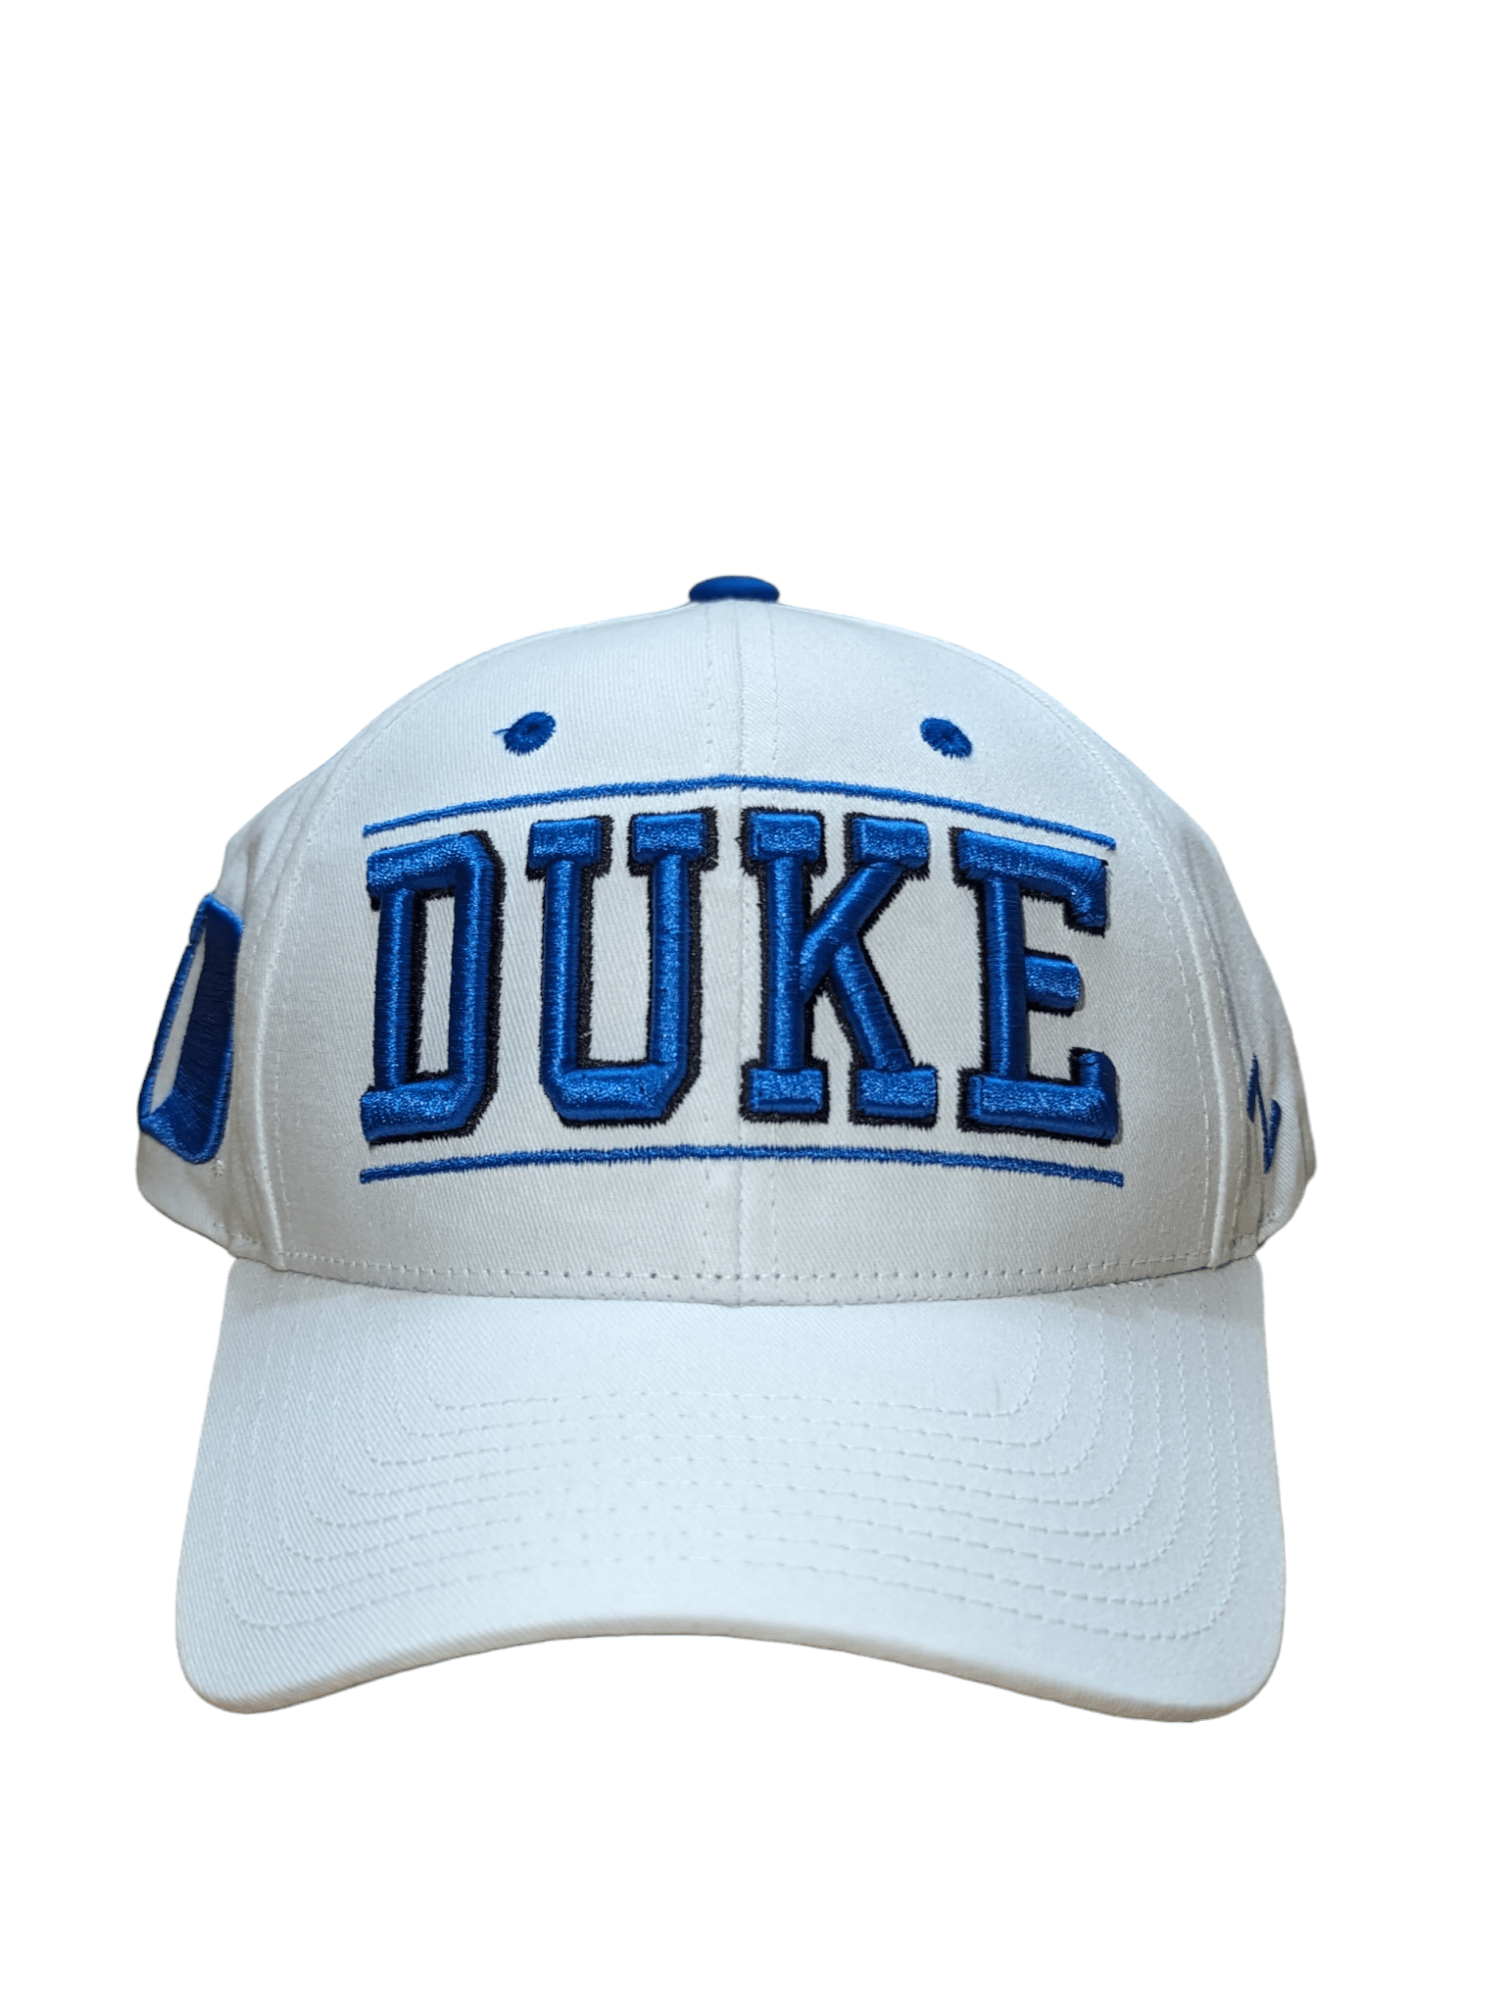 Zephyr Hat Duke Blue Devils Citadel Adjustable Hat